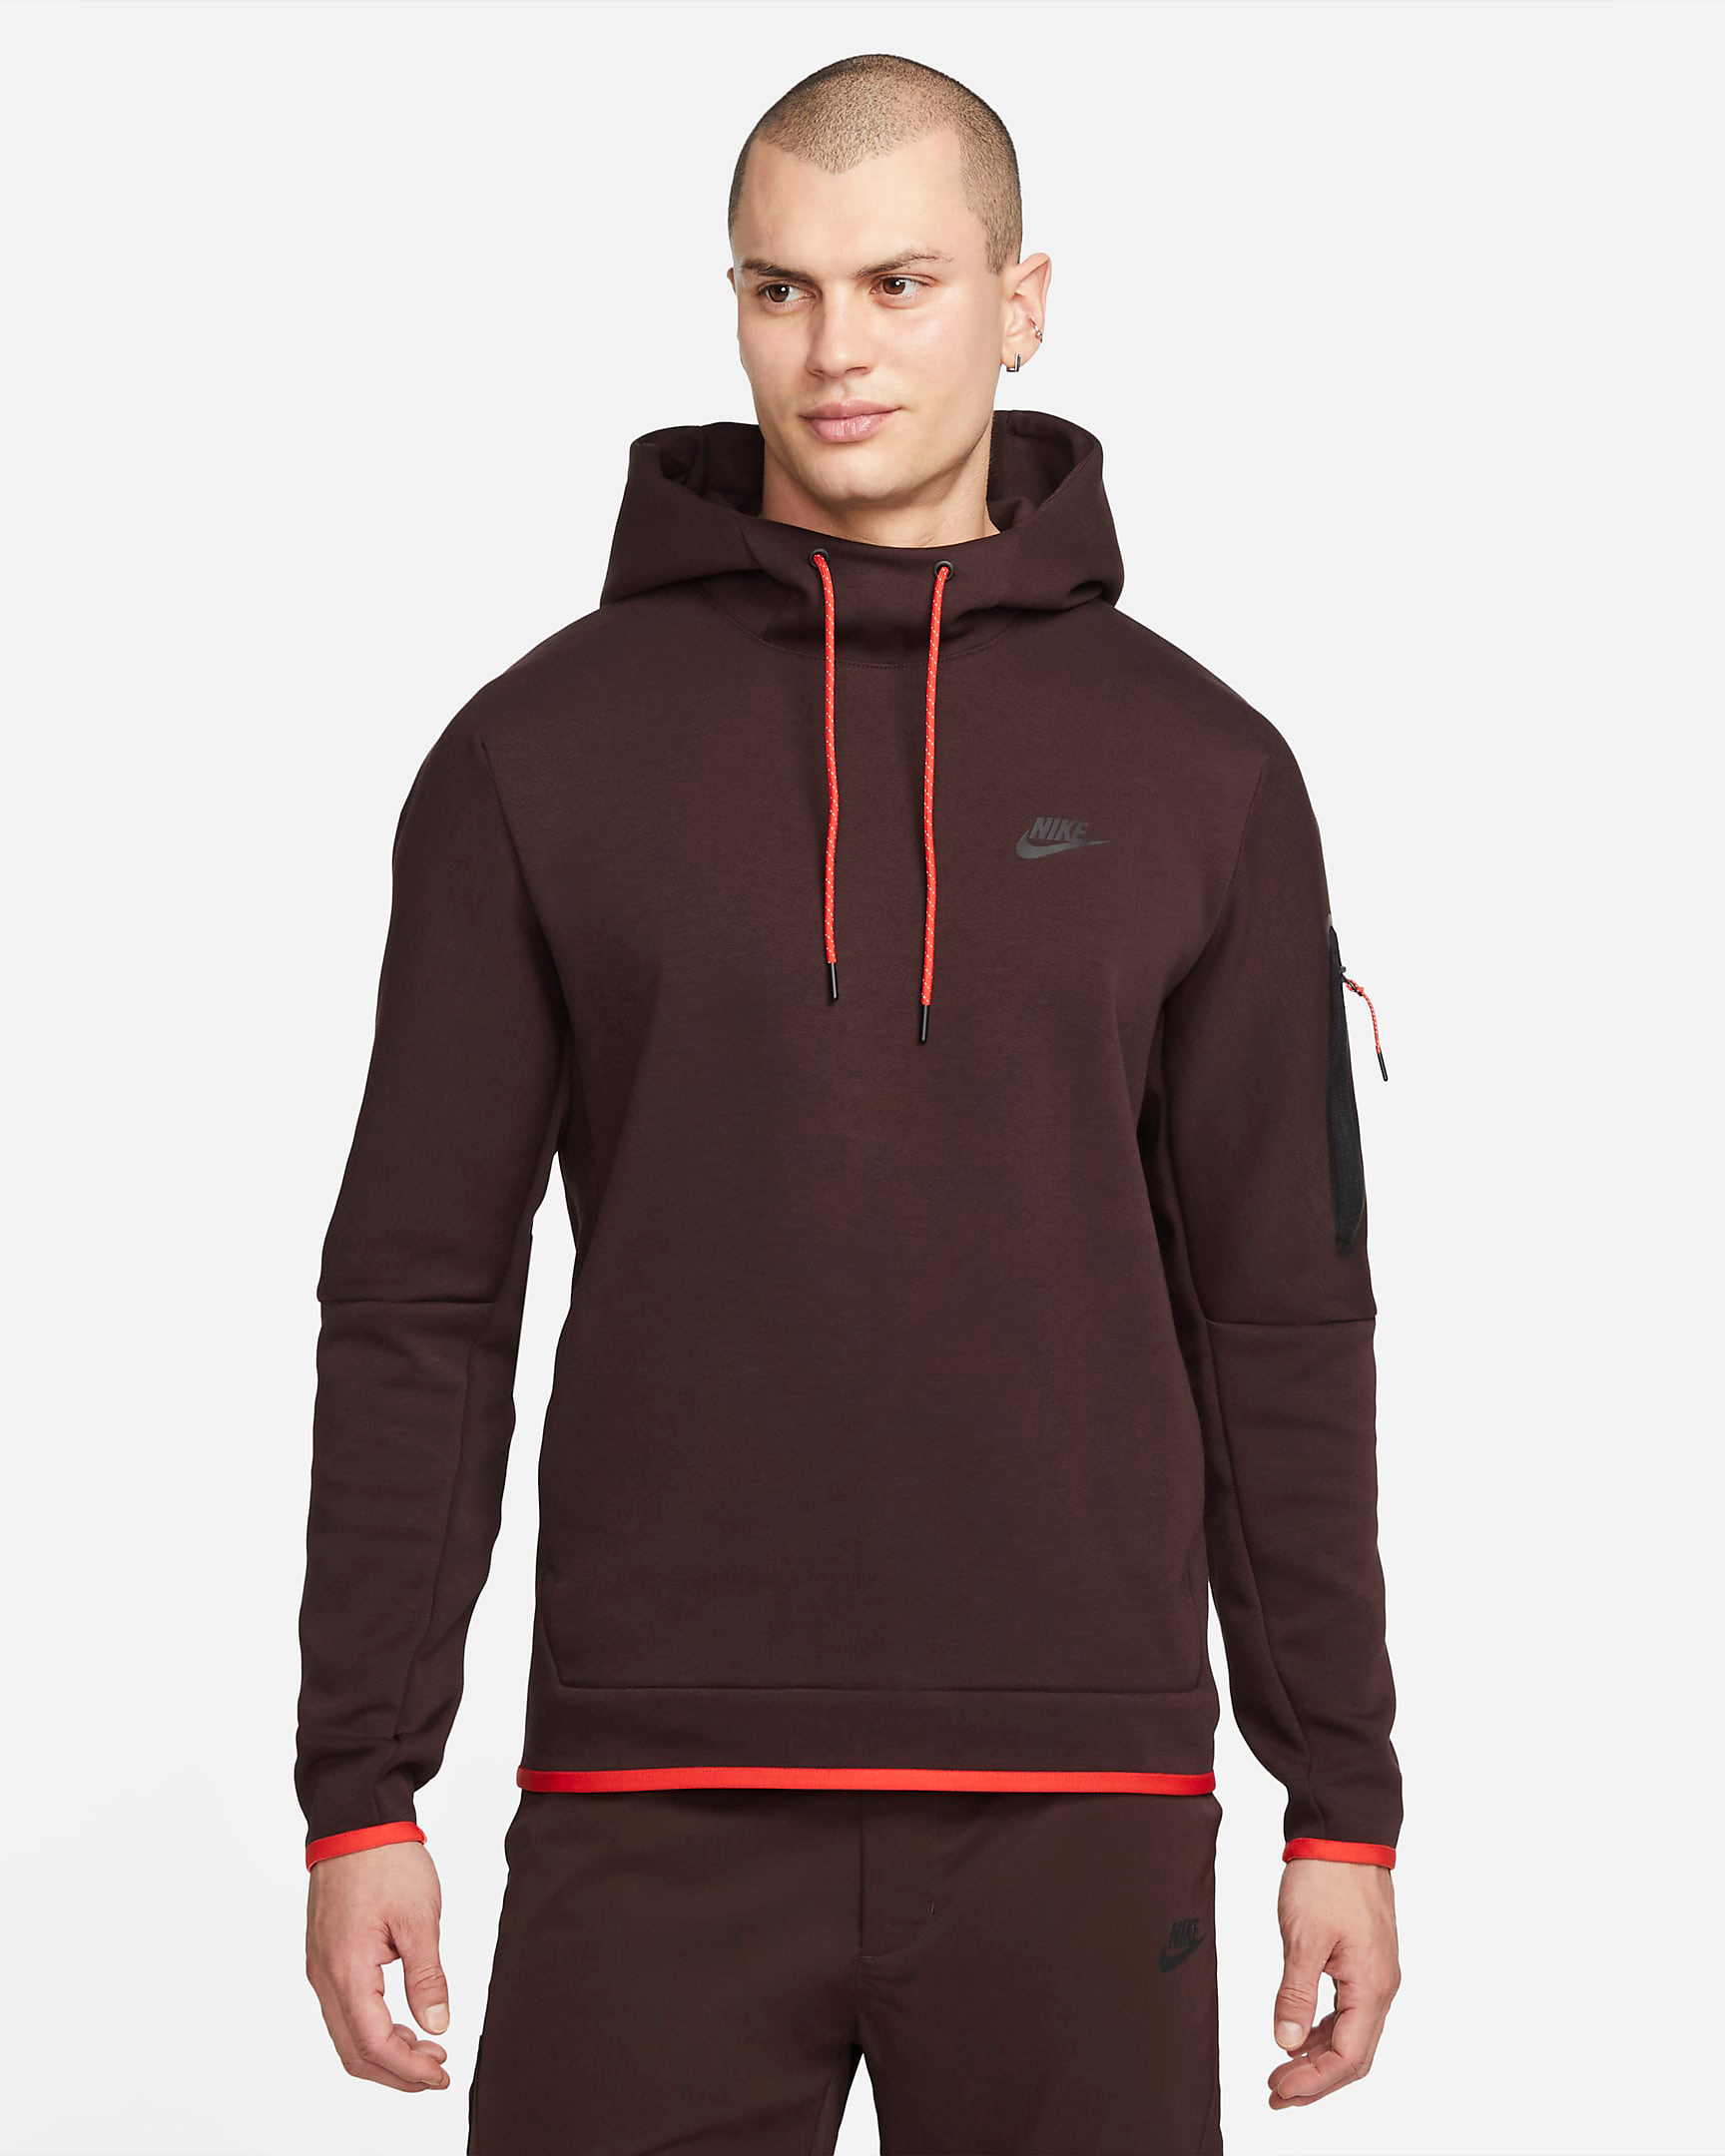 nike-tech-fleece-hoodie-brown-basalt-black-chile-red